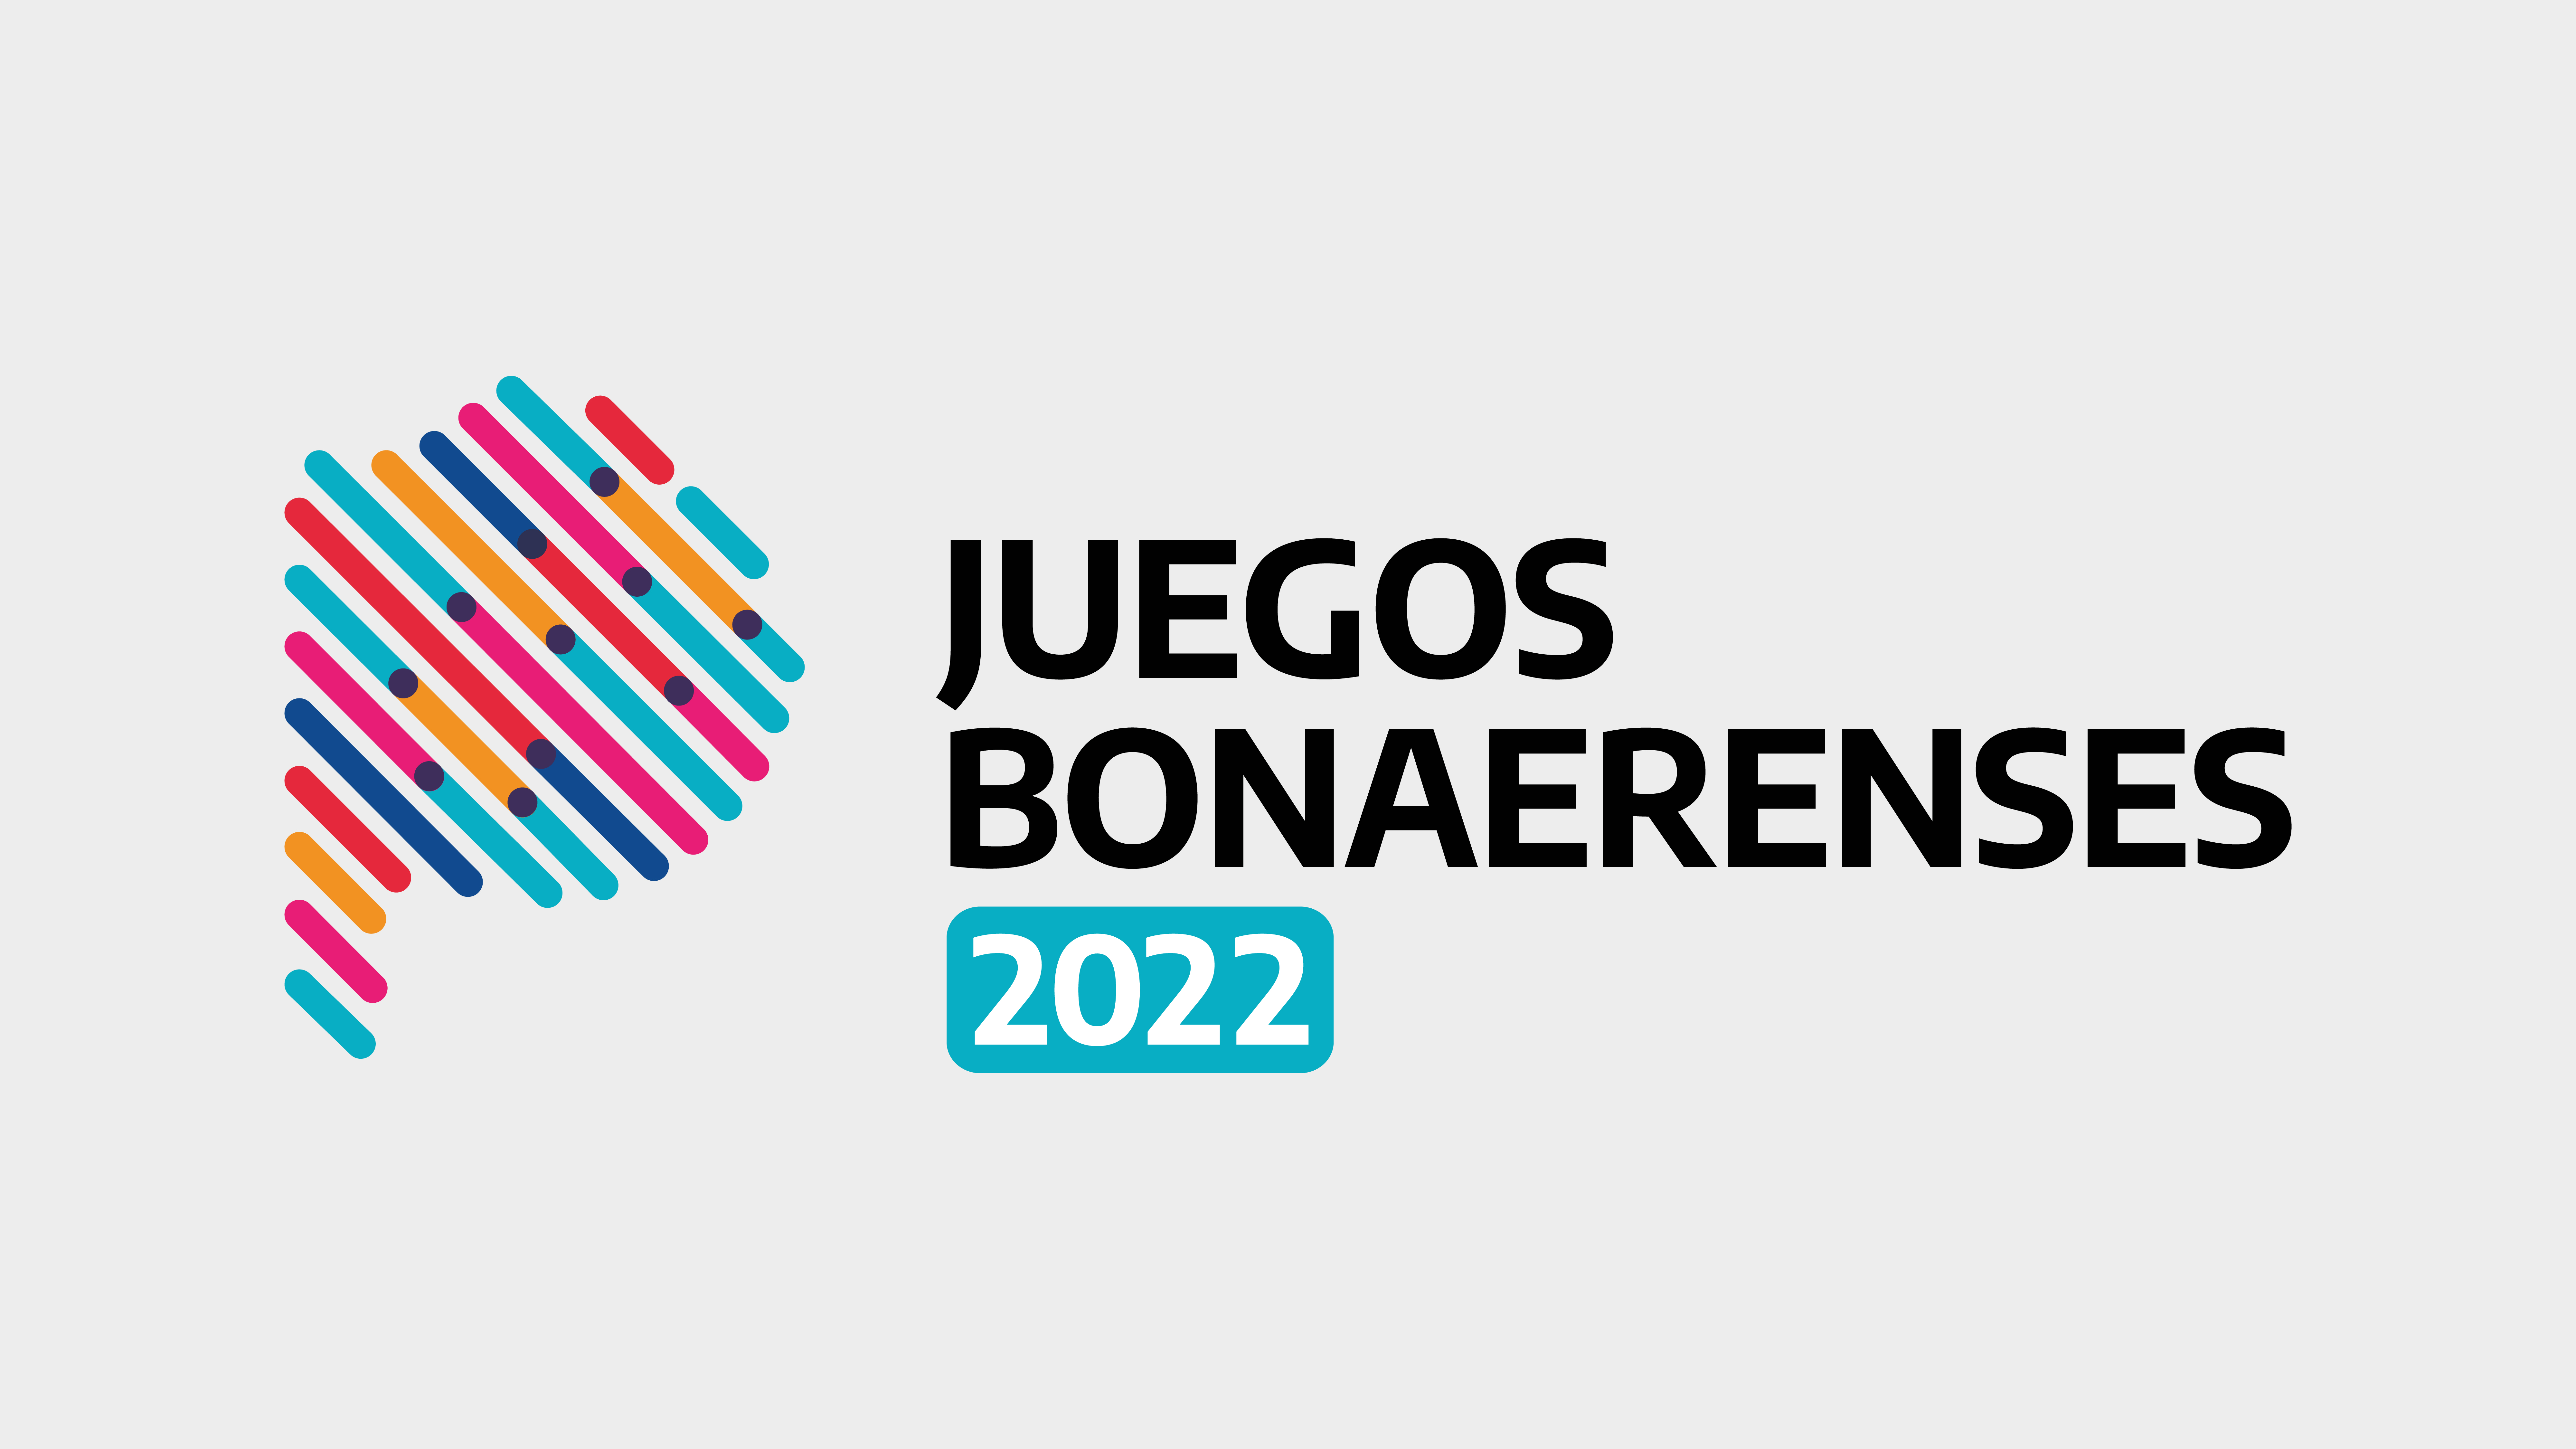 SE ABRIERON LAS INSCRIPCIONES PARA LOS JUEGOS BONAERENSES 2022